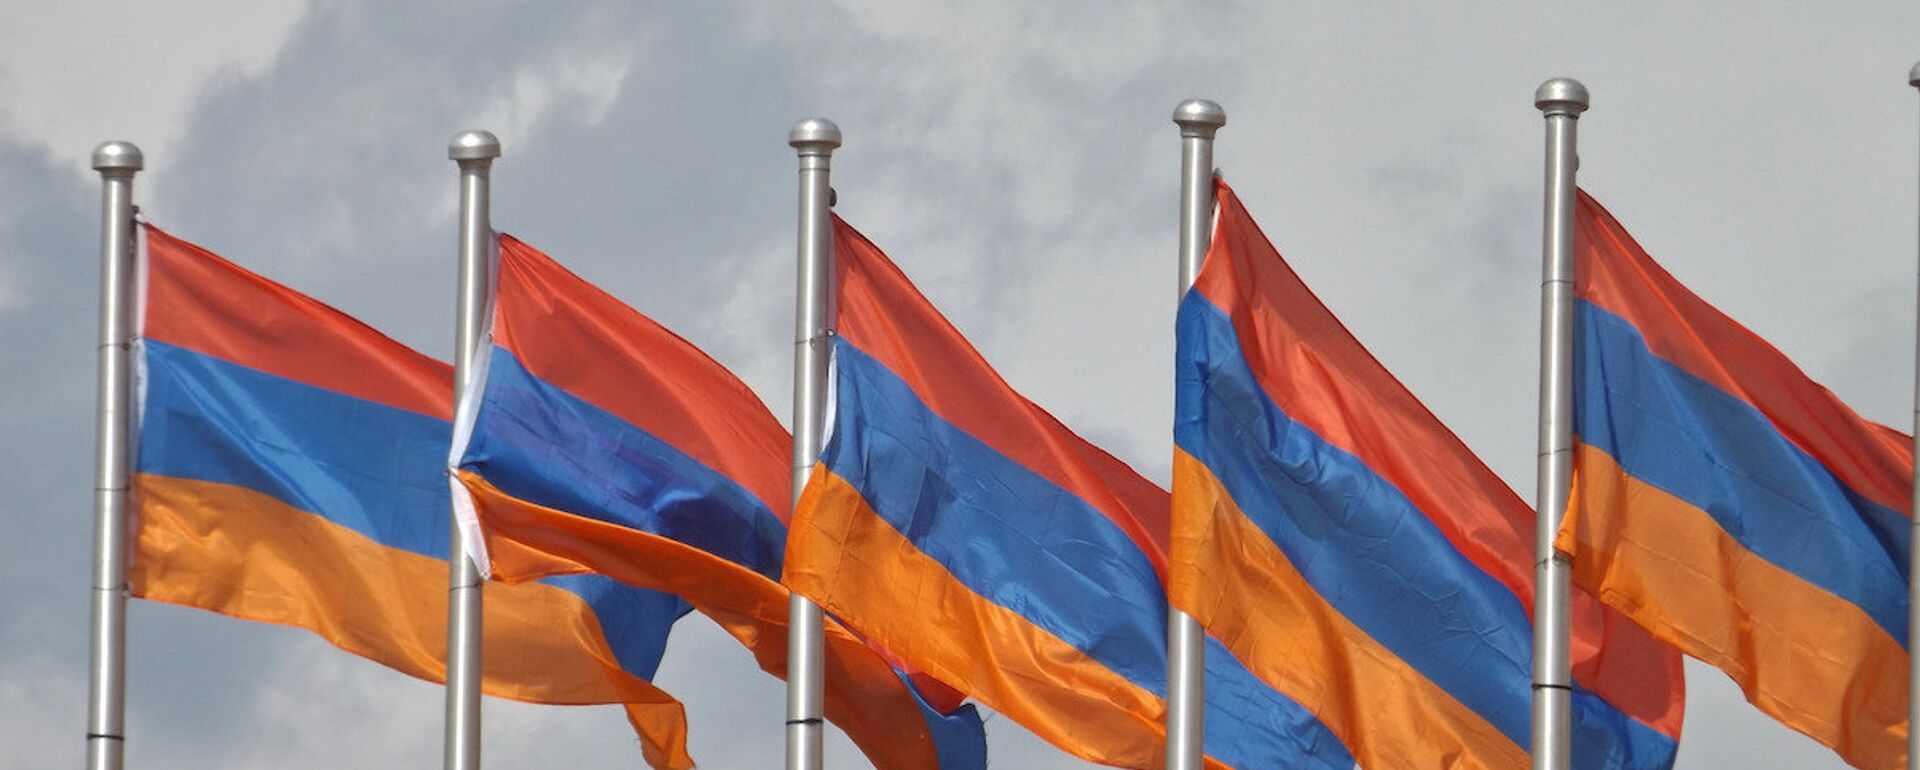 Ermenistan bayrağı. - Sputnik Türkiye, 1920, 14.12.2021